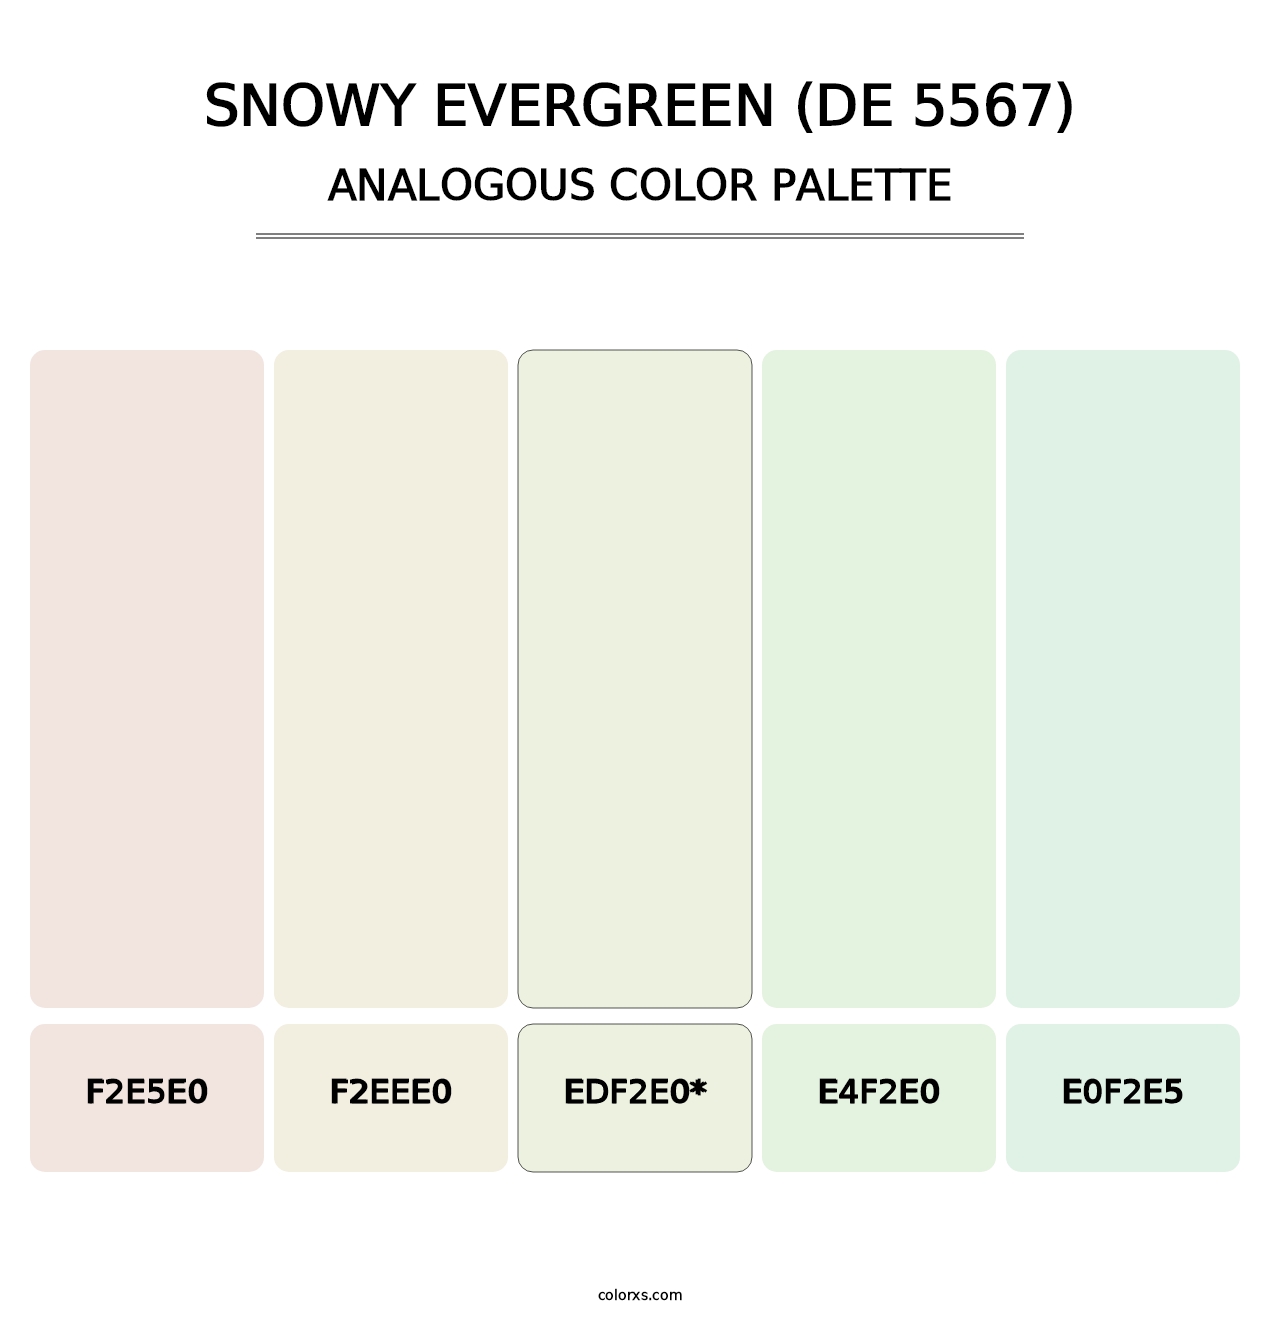 Snowy Evergreen (DE 5567) - Analogous Color Palette